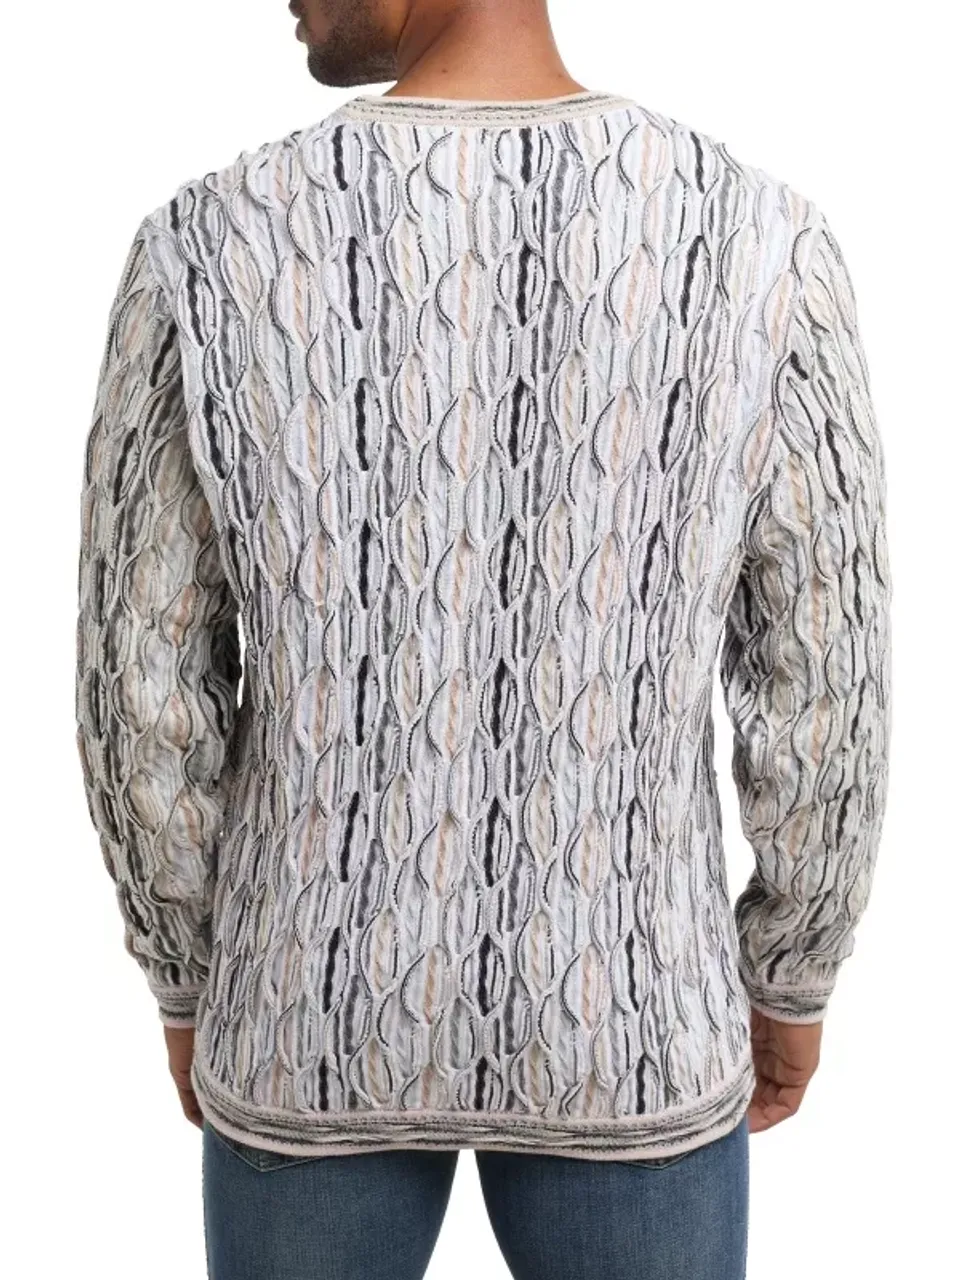 Carlo Colucci C9926 591 sweater multi